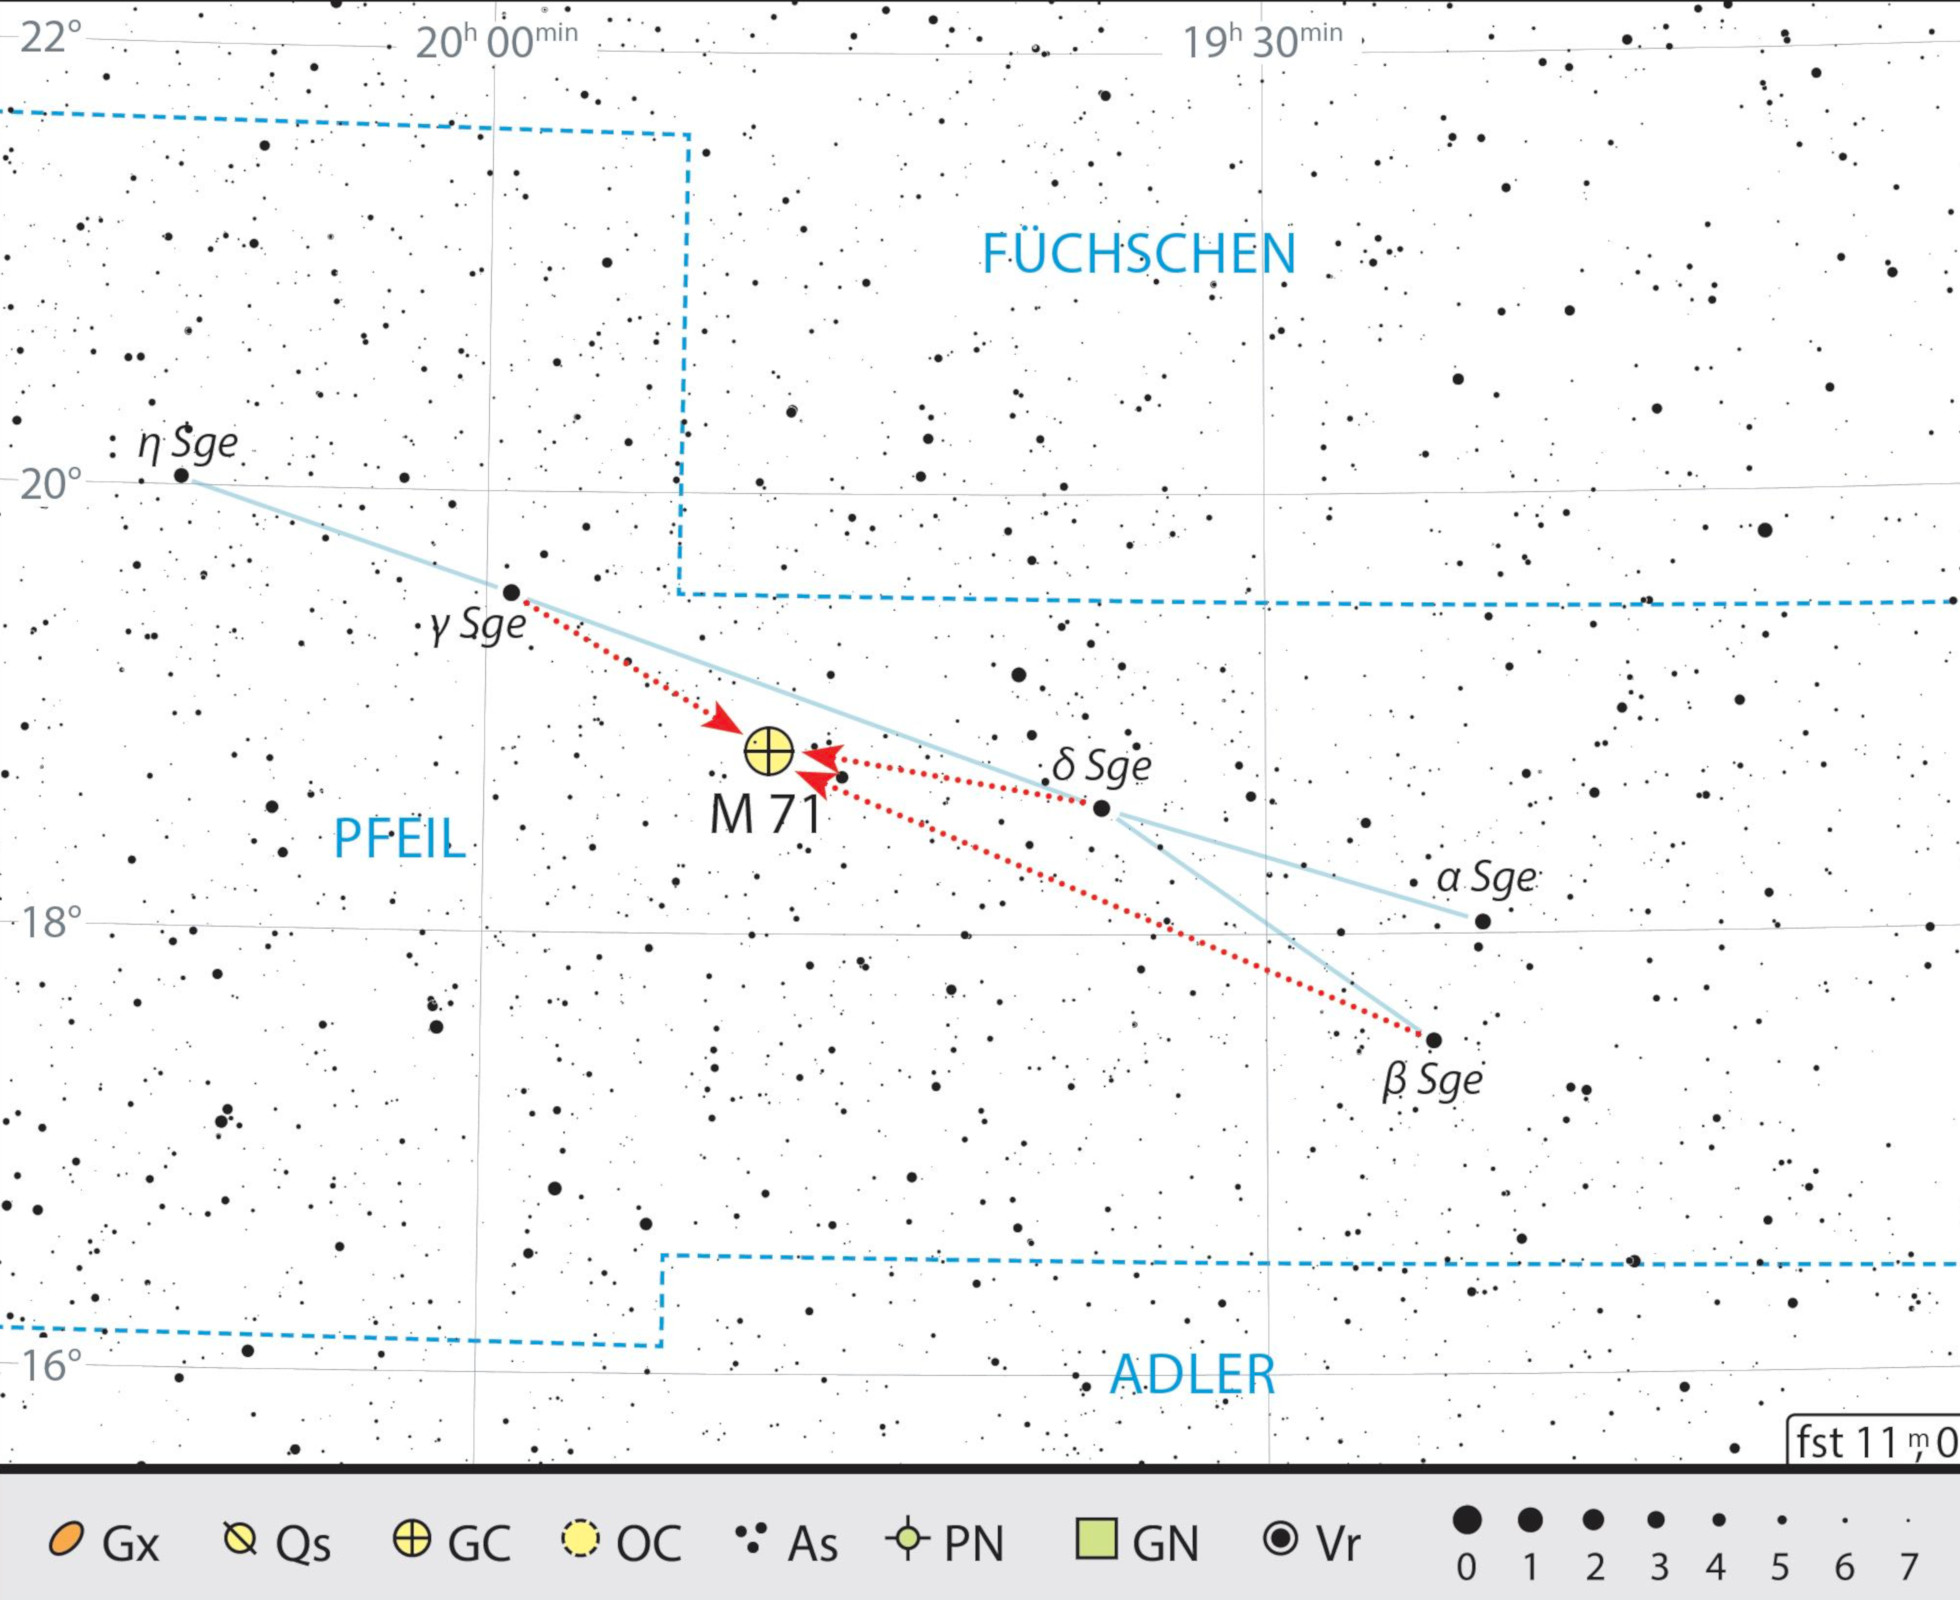 Mappa celeste per Messier 71 nella costellazione della Freccia. J. Scholten